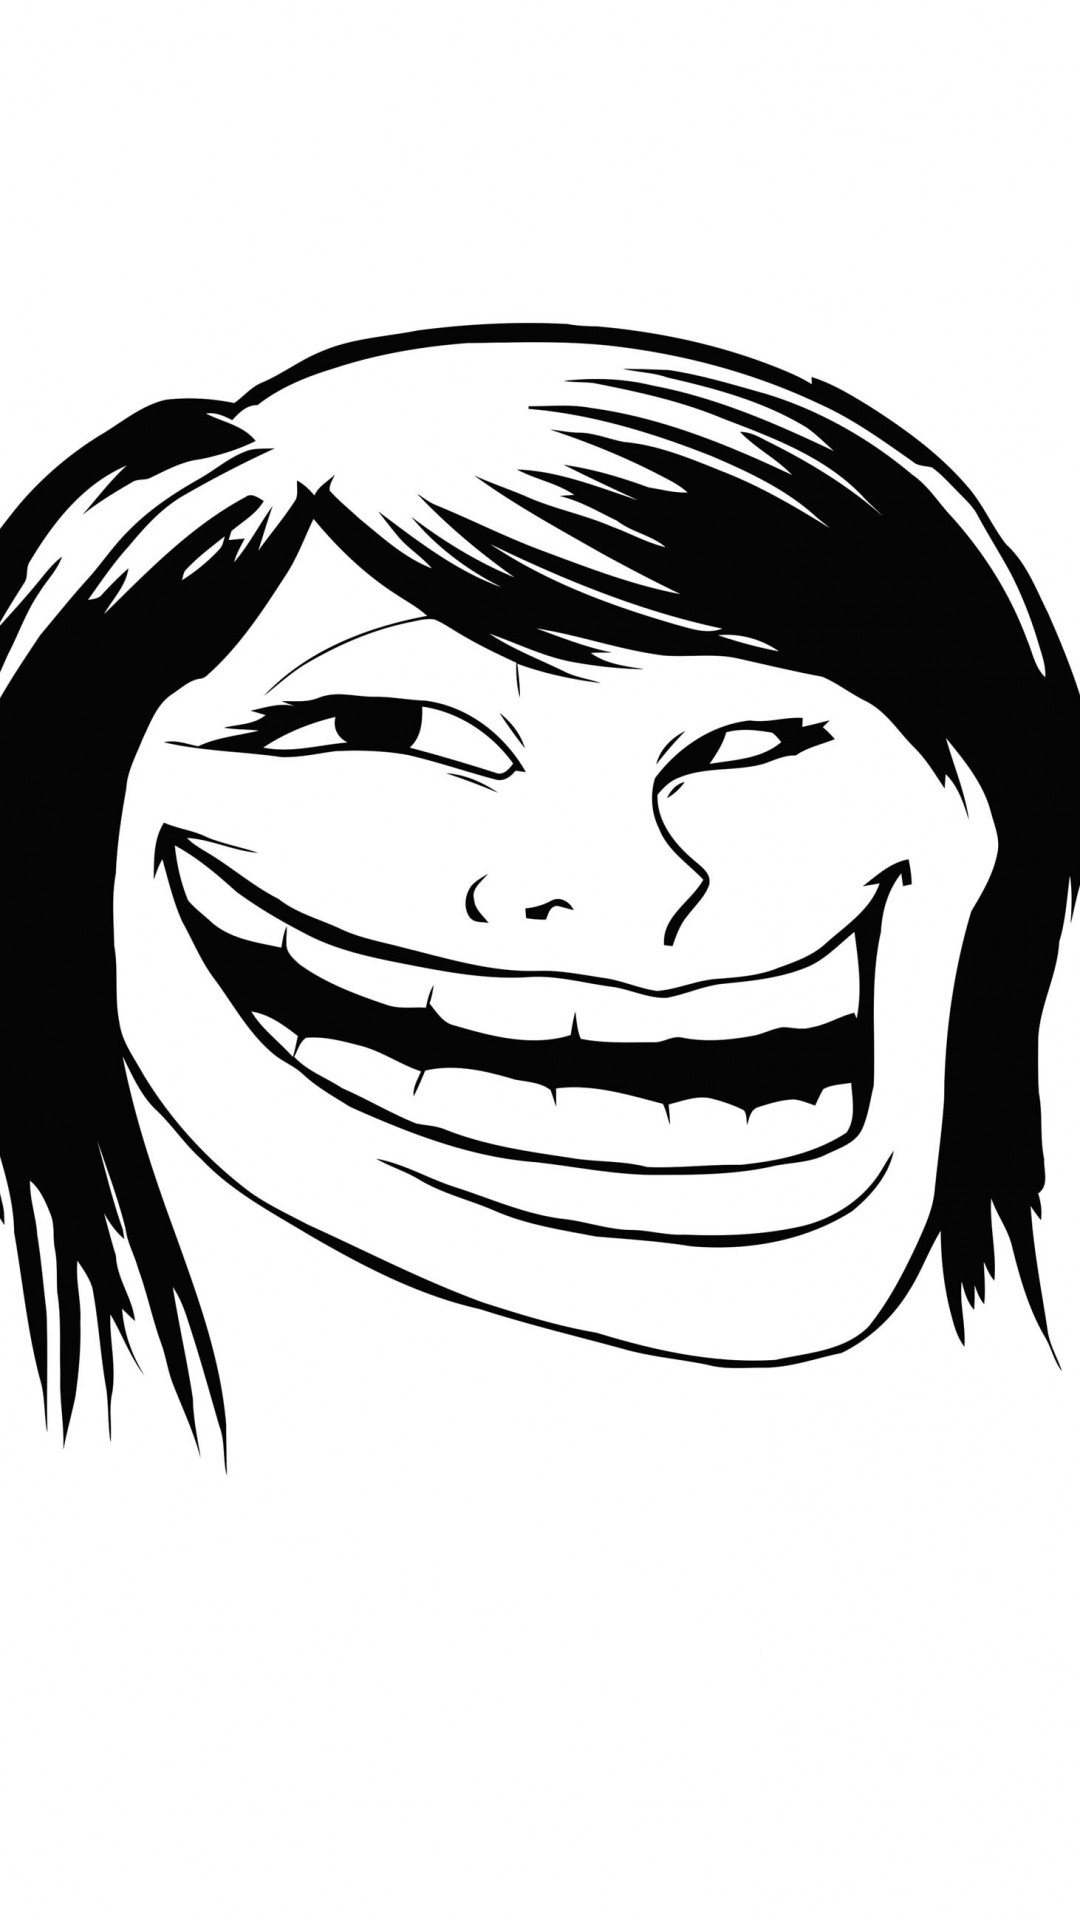 Female Troll Face Meme Wallpaper for Google Nexus 5